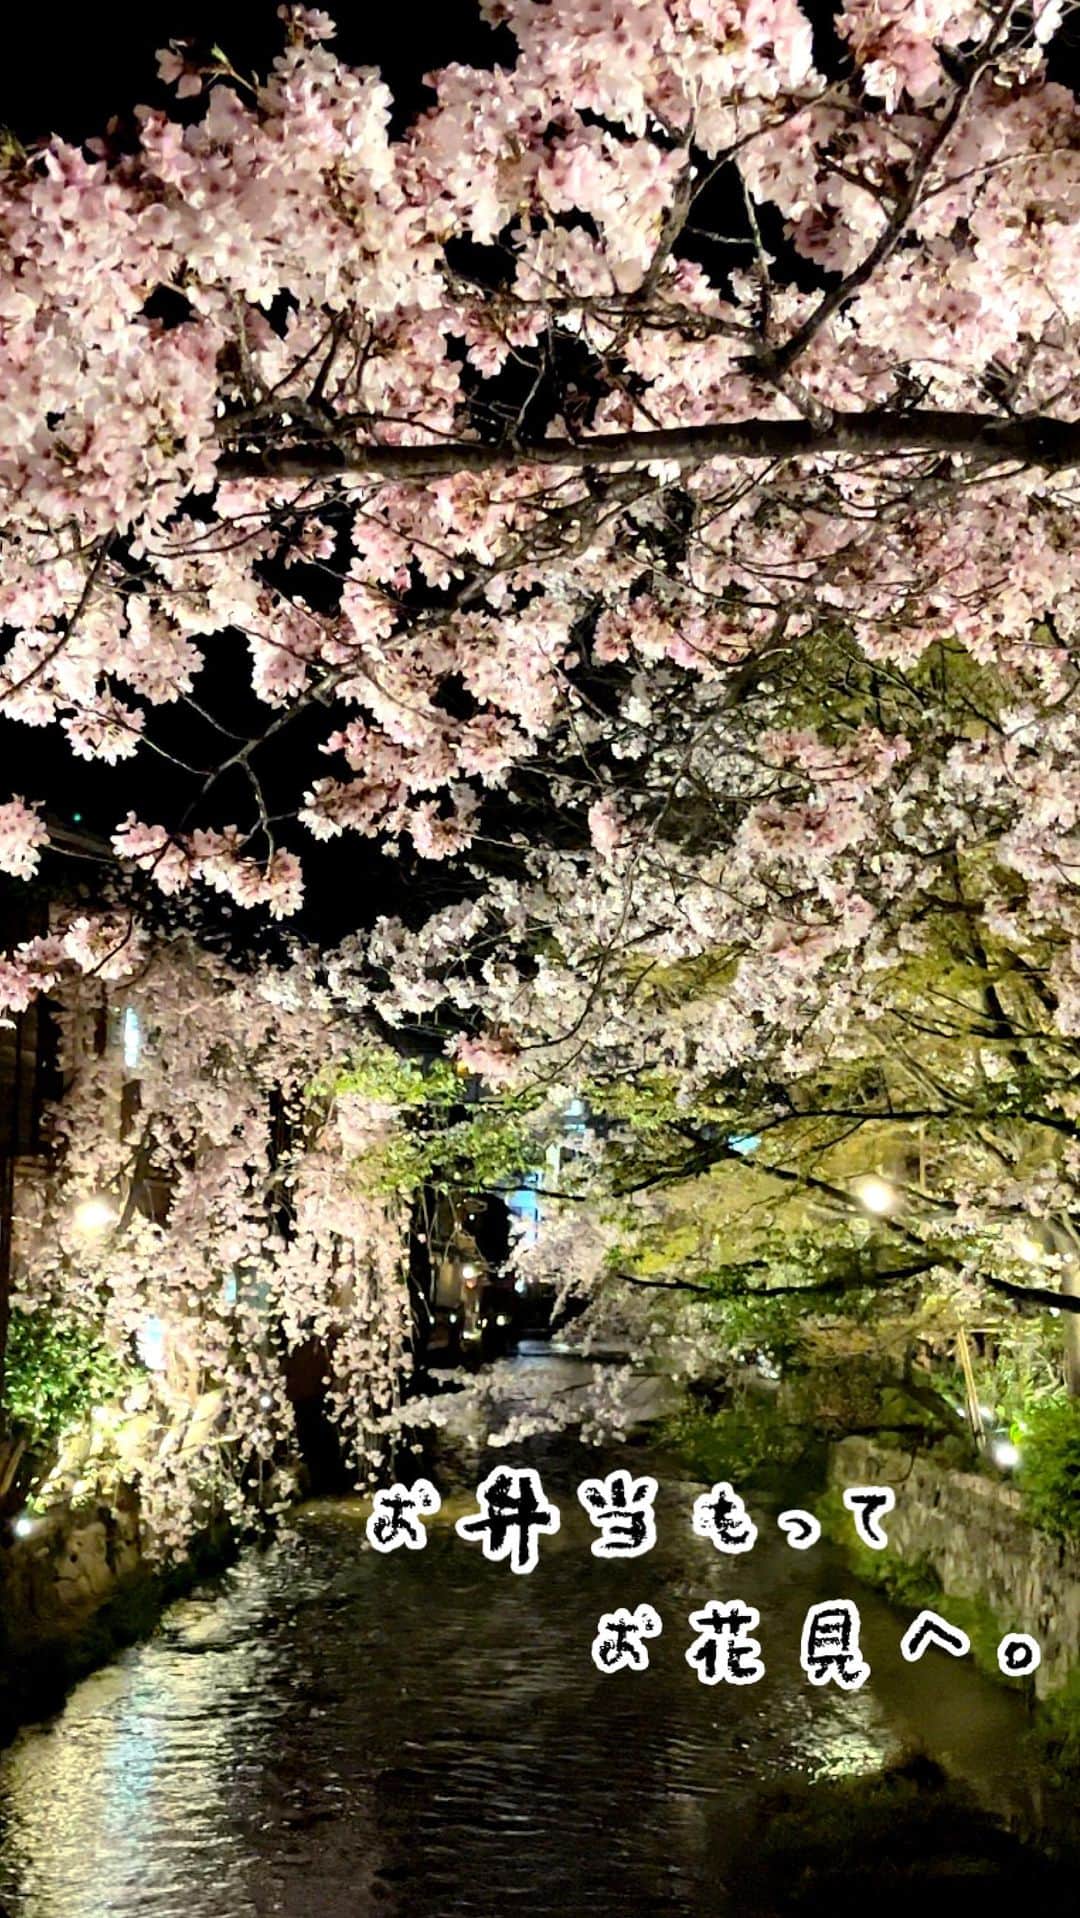 こころのたねのインスタグラム：「⢀⢄ ．．⢄ ⢀𖧧  昨日はお弁当持って、娘とお花見へ。 ⁡ 京都鴨川でお弁当とお団子食べて、 そのあとは界隈散歩🌸 夜は白川宵桜ライトアップがとびっきり綺麗で 癒されました✧ ⁡ お弁当メニュー 𖧷アスパラの豚肉巻き照り焼き 𖧷玉子焼き 𖧷赤ピーマンの白だし炒め 𖧷パセリとチーズの椎茸炒め 𖧷ニラのナムル 𖧷紫キャベツのマリネ 𖧷れんこんチップ 𖧷豆ご飯・梅干し 𖧷金柑 ⁡ ⁡ 日々のキロクは𝔸𝕞𝕖𝕓𝕒ブログにも✍️ @kokoronotane ⁡ ⁡ ⁡ 𖧷 𖧷 𖧷 𖧷 𖧷 𖧷 𖧷 𖧷 𖧷 𖧷 𖧷 𖧷  各、著書発売中です。 📘のほほん御膳 📗のほほん曲げわっぱ弁当 📙美しい作りおき 📕かわいいお菓子 𖧷 𖧷 𖧷 𖧷 𖧷 𖧷 𖧷 𖧷 𖧷 𖧷 𖧷 𖧷 詳細・お求めはハイライトの📚マークから。 ⁡ その他、オリジナル商品 🍵有機茶（6種） 🍲レンジ鍋（3種） 🧸online shop（手づくり） ハイライトの各マークから✧ @kokoronotane ⁡ おでかけアカウント @_tecu_tecu_  はじめてみました𖠿 ．．⢄ ．．⢄ ⢀⢄ ．⢀𖧧 ⁡ #🌸#弁当#お弁当#おべんとう#手作り弁当#豆ご飯#お出かけ#京都おでかけ#桜#夜桜#京都#お花見#京都の桜#京都お花見#京都鴨川#京都白川#京都ぶらり#京都散歩#京都を楽しむ #白川ライトアップ#情緒ある風景#kyoto」